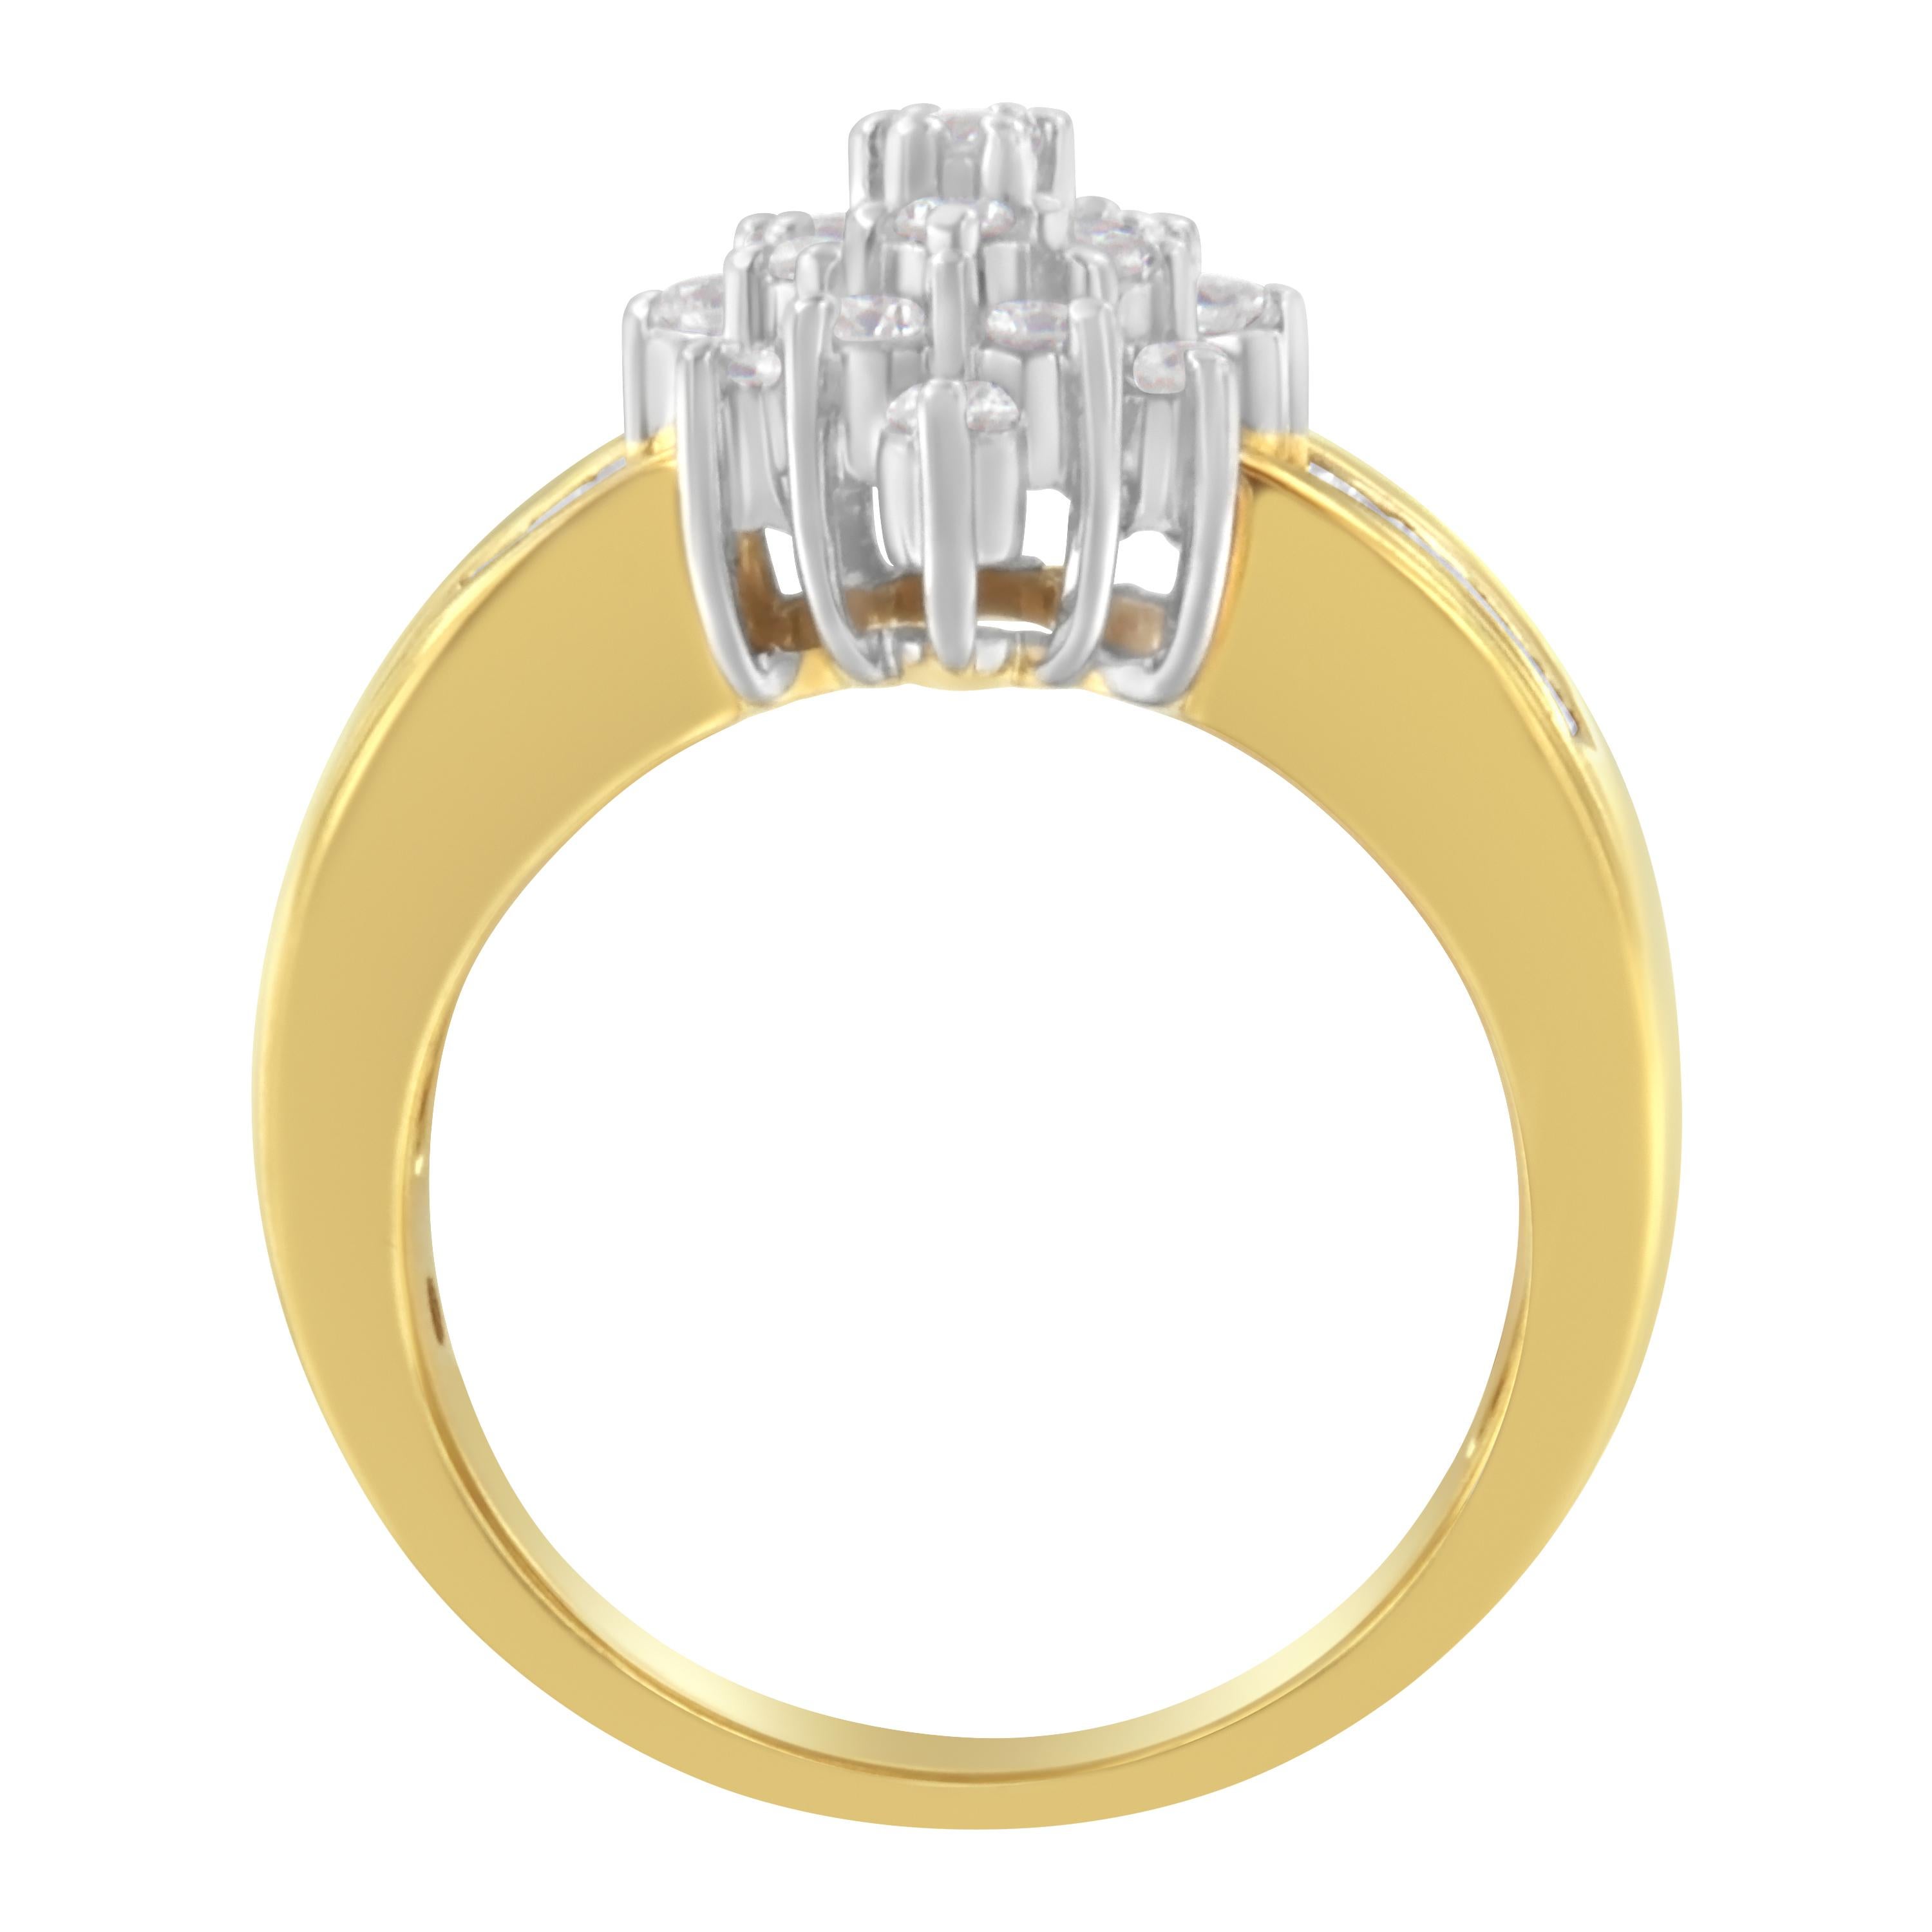 Dieser luxuriöse und glänzende Diamantring ist eine atemberaubende Wahl, der sie nicht widerstehen kann. Dieses wunderbare Modell aus warmem 10-karätigem Gold ist mit einem schillernden, marquiseförmigen Diamantenkomposit ausgestattet. Der